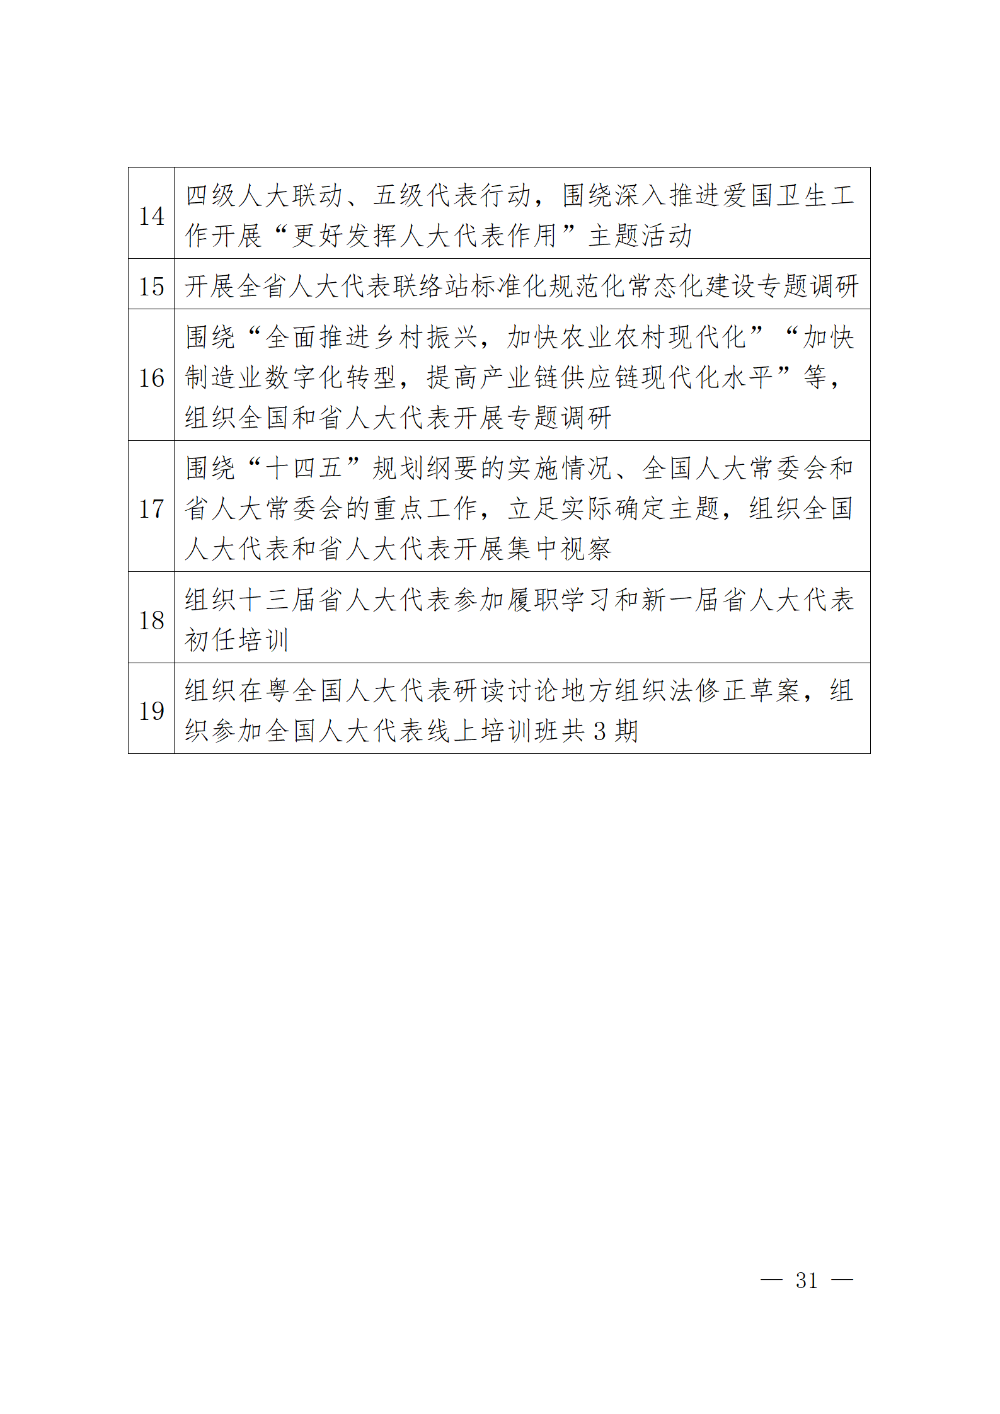 230115-（登报版定稿）广东省人民代表大会常务委员会工作报告_31.png